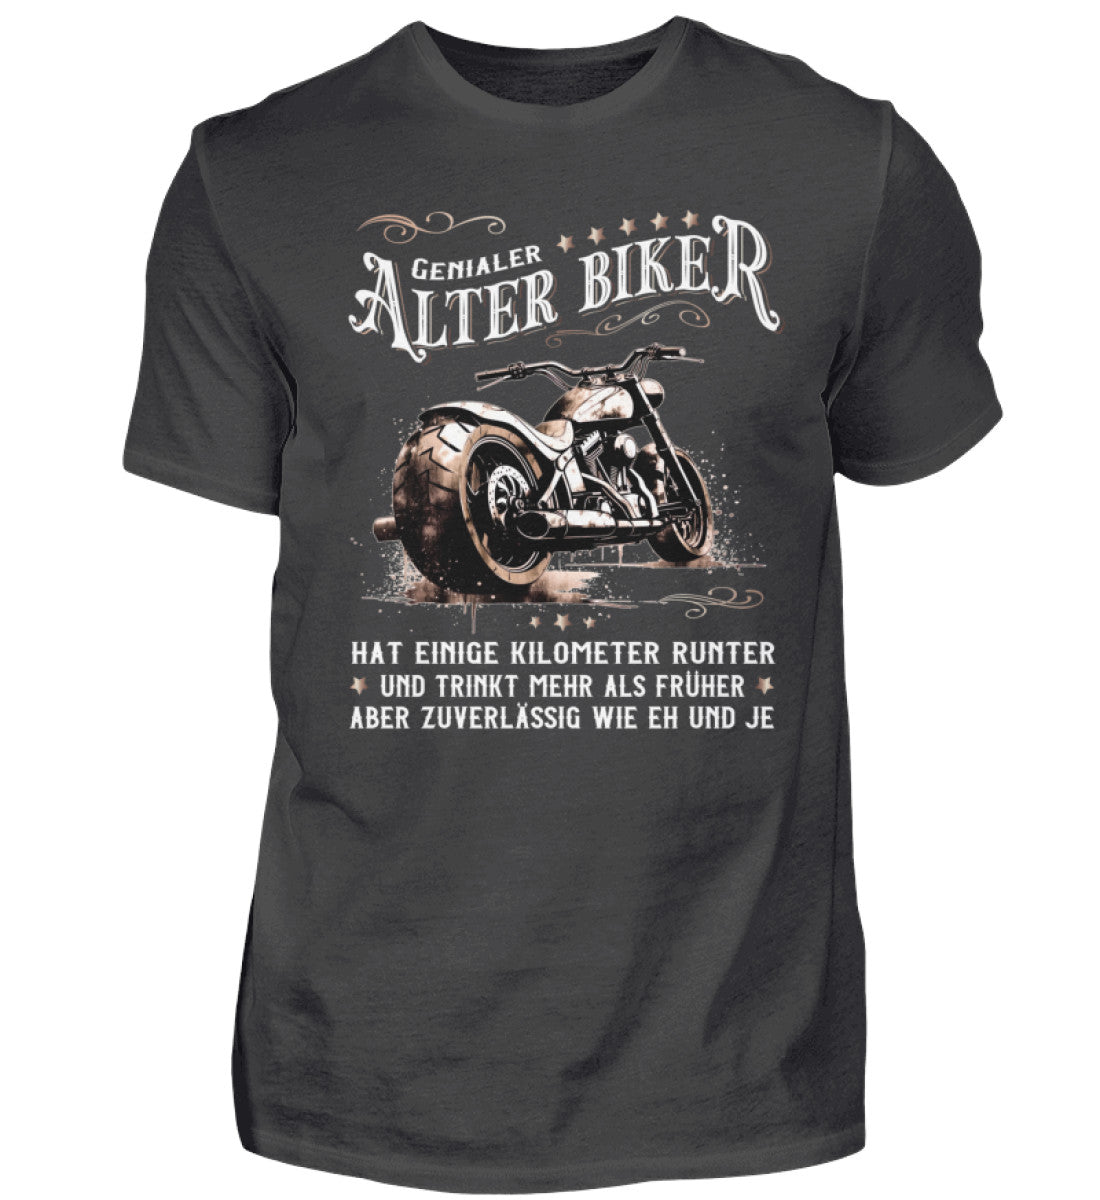 Ein Biker T-Shirt für Motorradfahrer von Wingbikers mit dem Aufdruck, Alter Biker - Einige Kilometer runter, trinkt mehr - aber zuverlässig wie eh und je - in dunkelgrau.